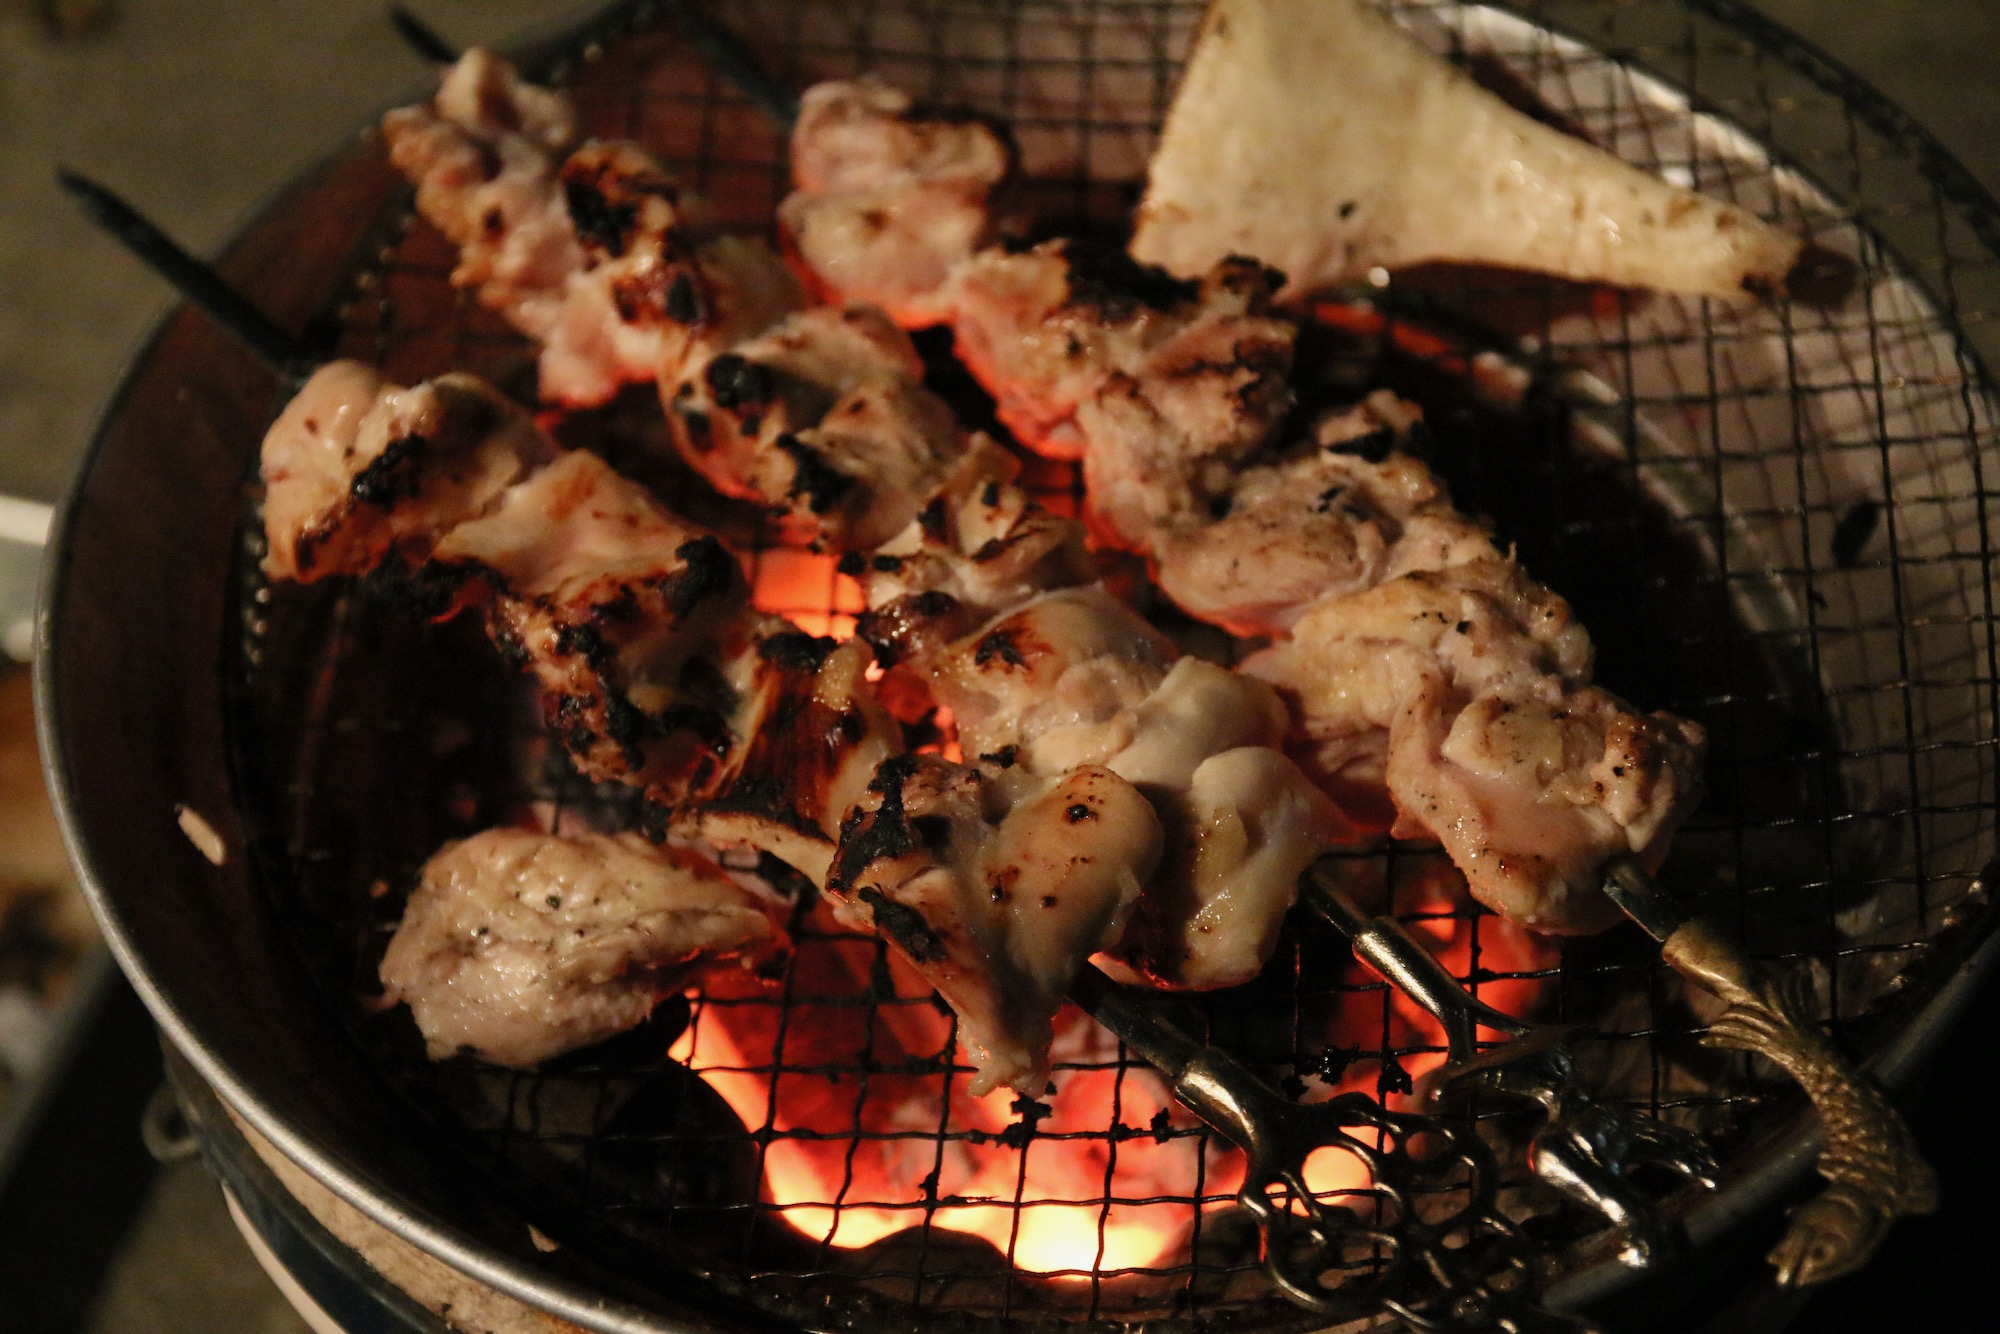 20200508七輪祭り4:Chicken Kebab